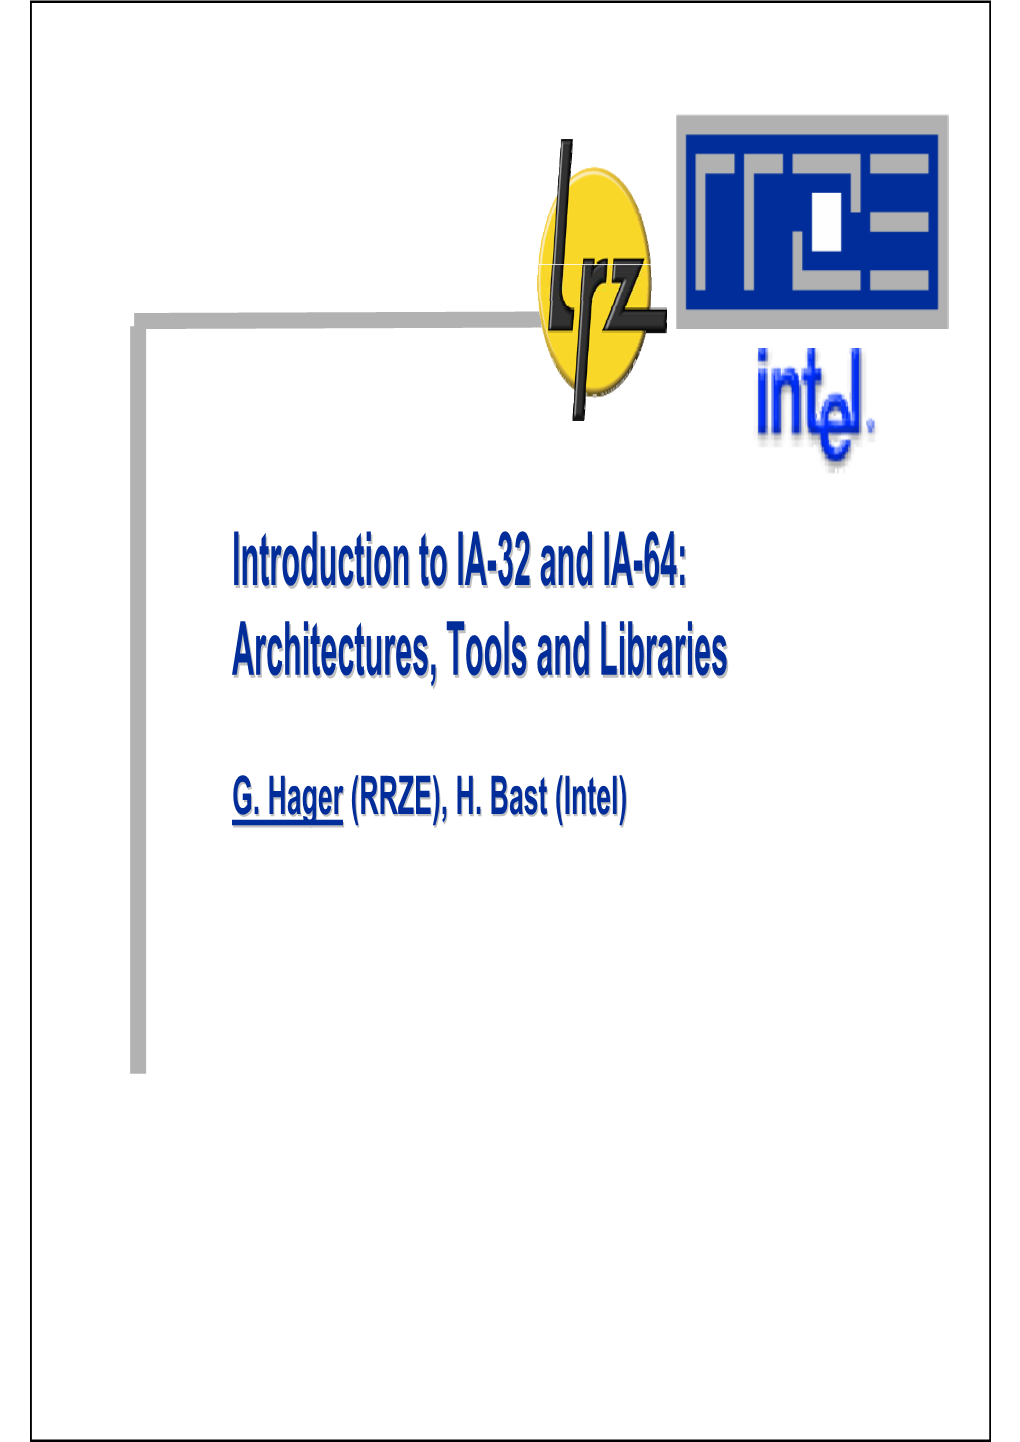 Introduction to IA-32 and IA-64